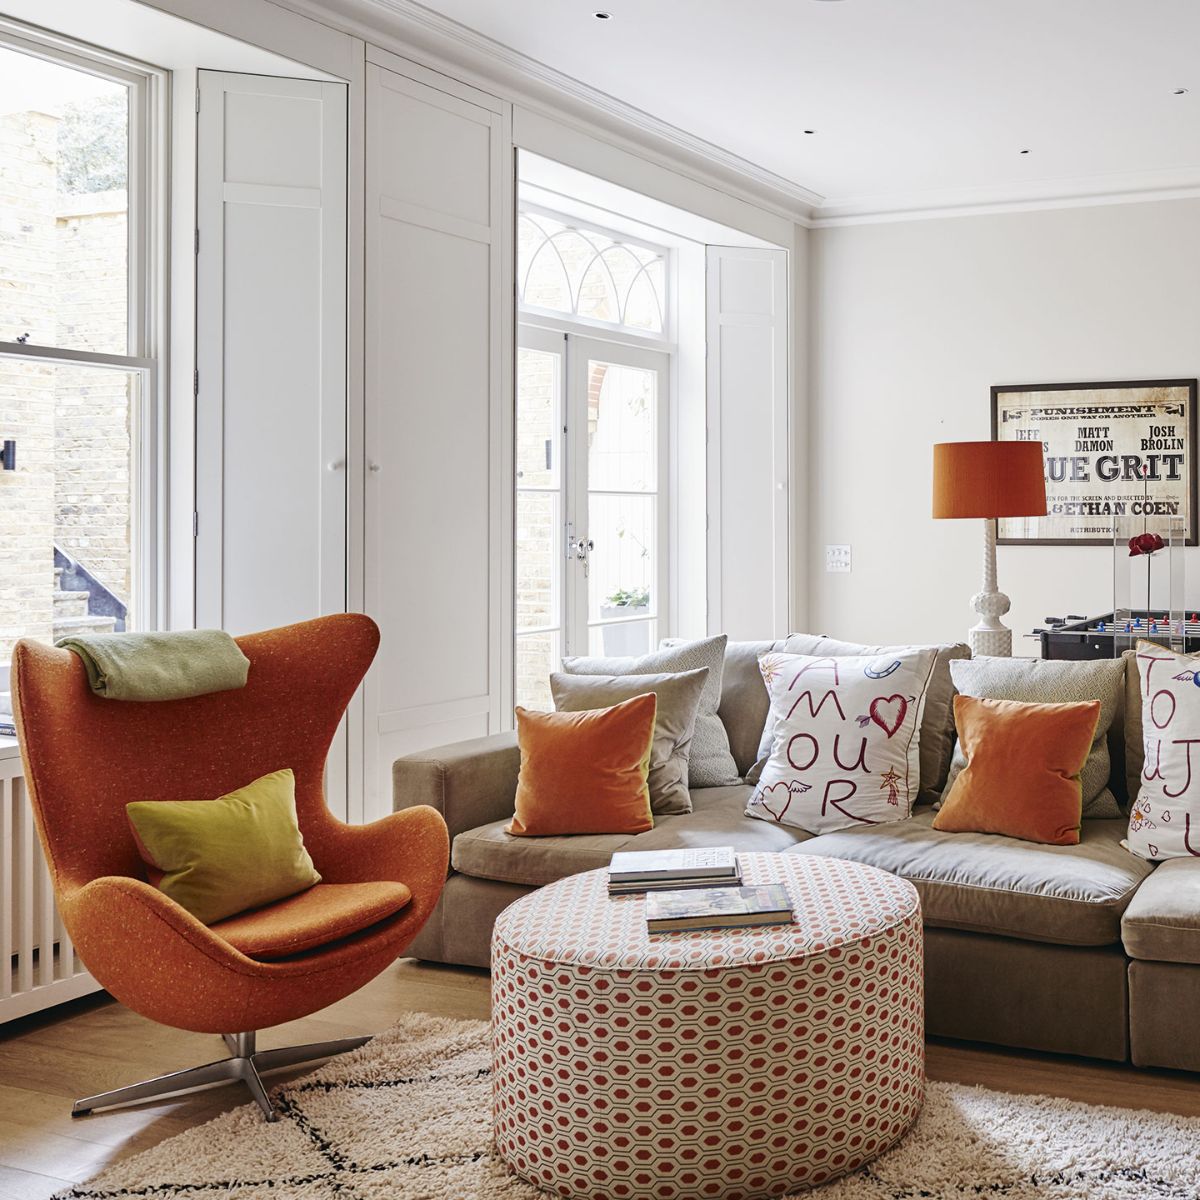 интерьер в ярких цветах эффектный дизайн гостиной с интересными креслами 